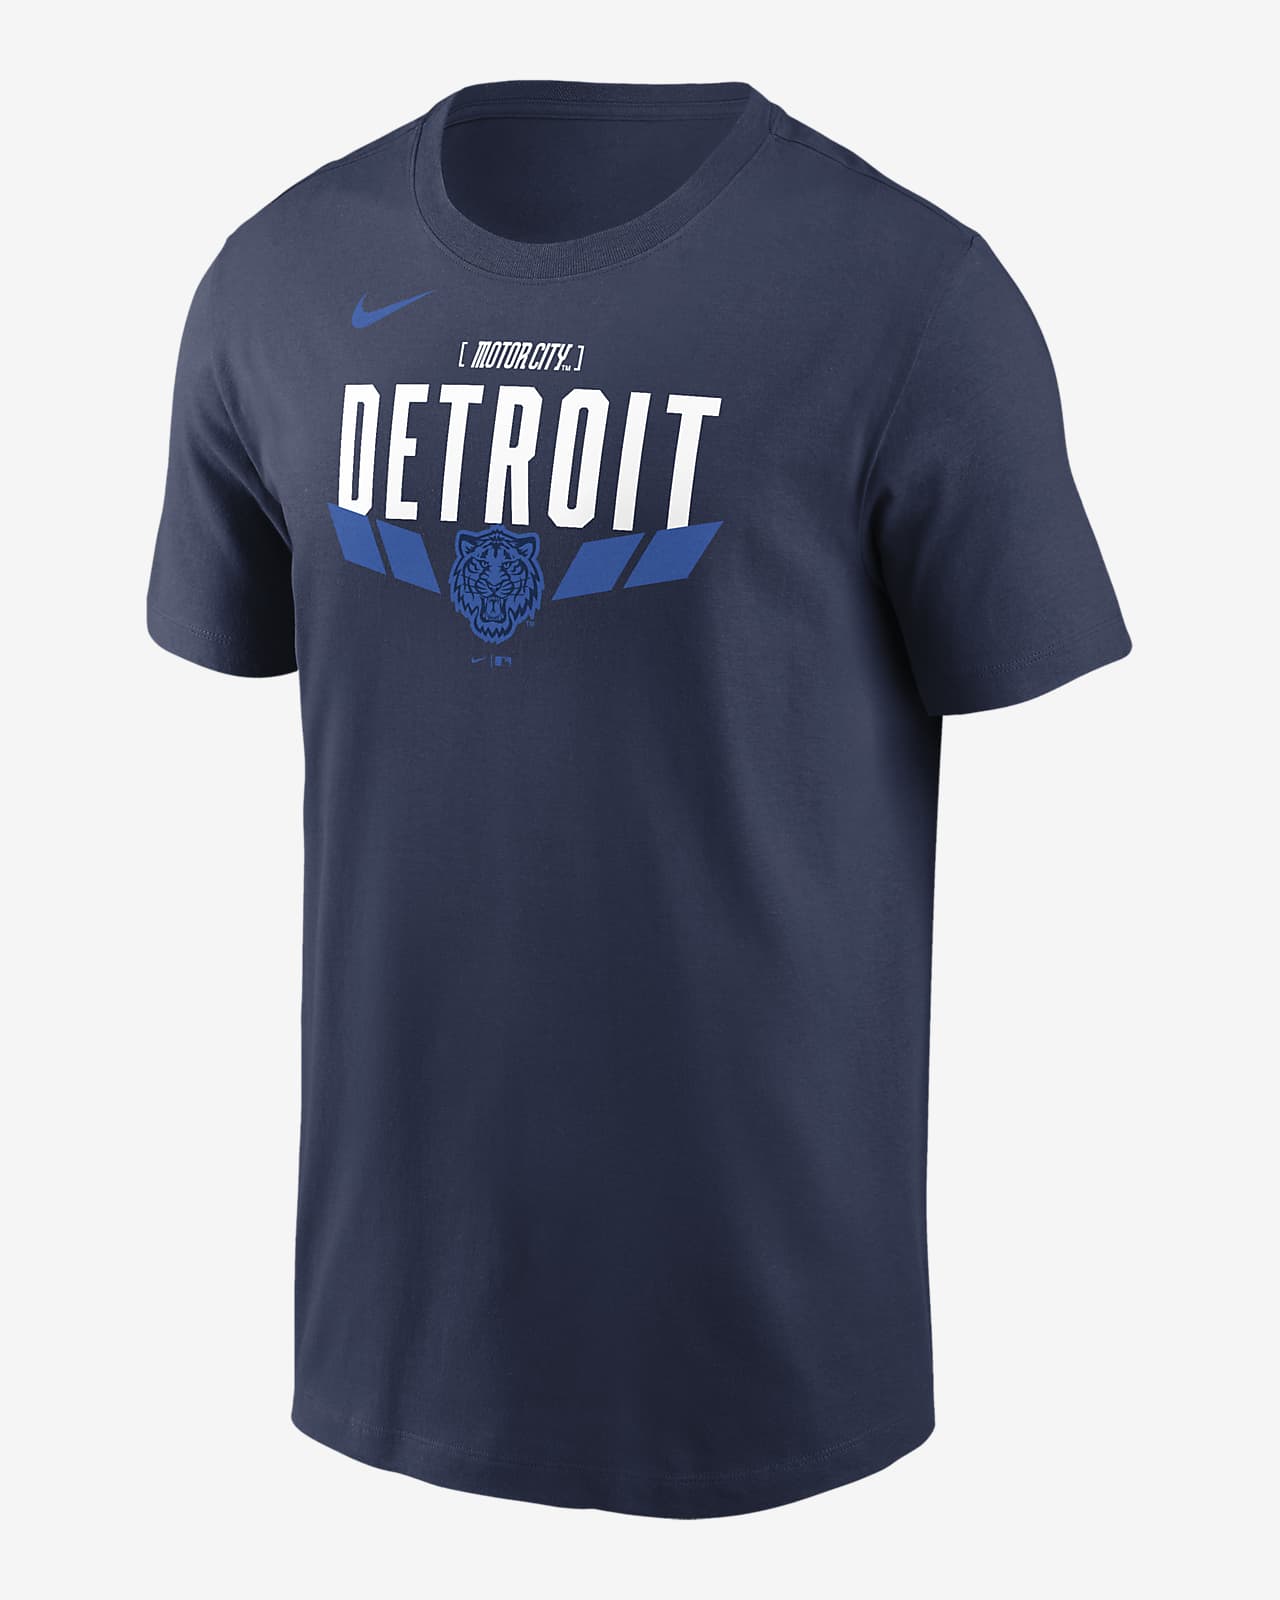 Playera Nike de la MLB para hombre Detroit Tigers City Connect